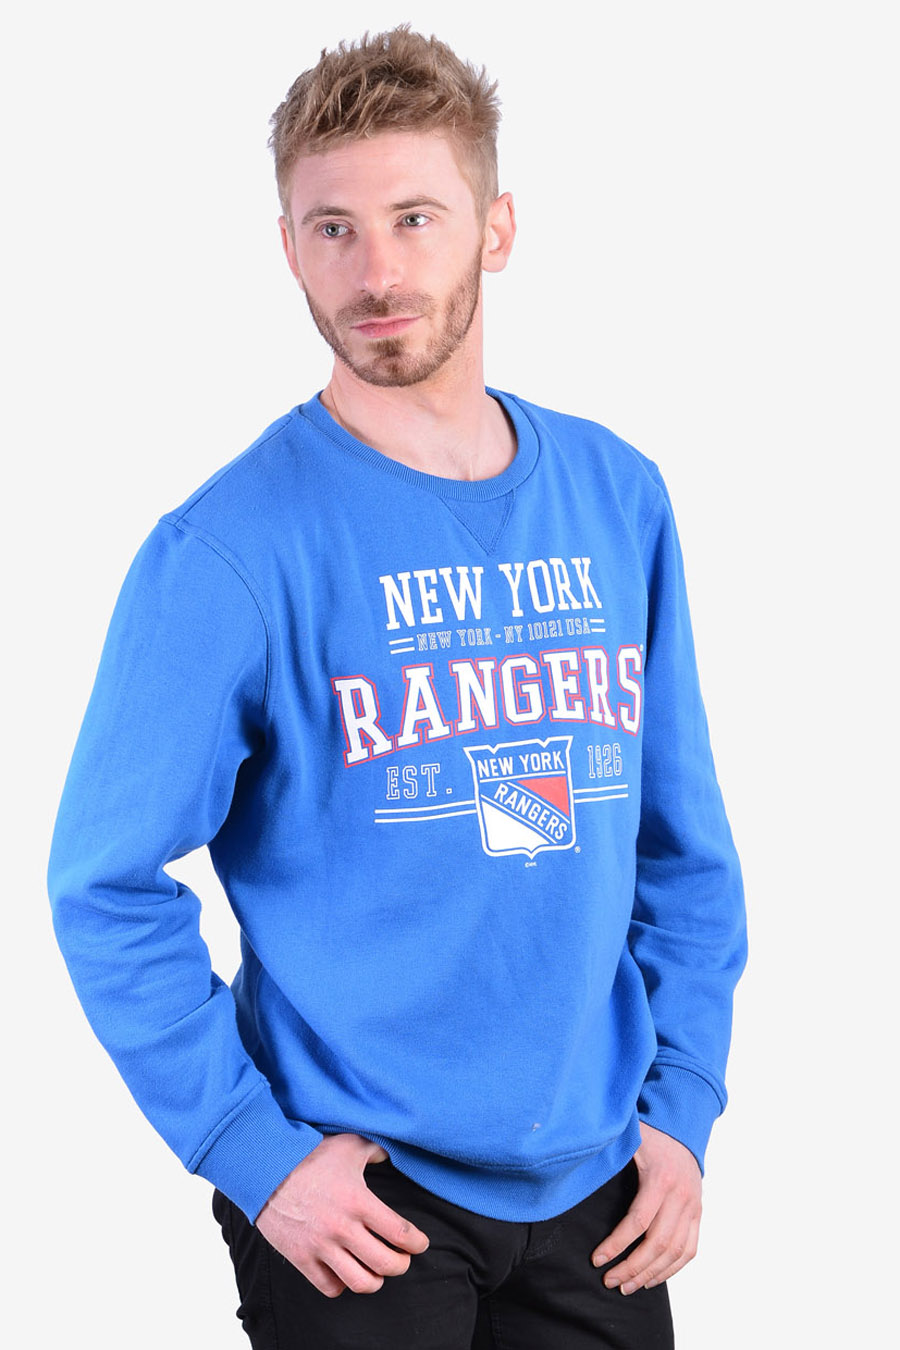 New York Rangers New York Rangers Rangers Fans Rangers Vintage Sweatshirt